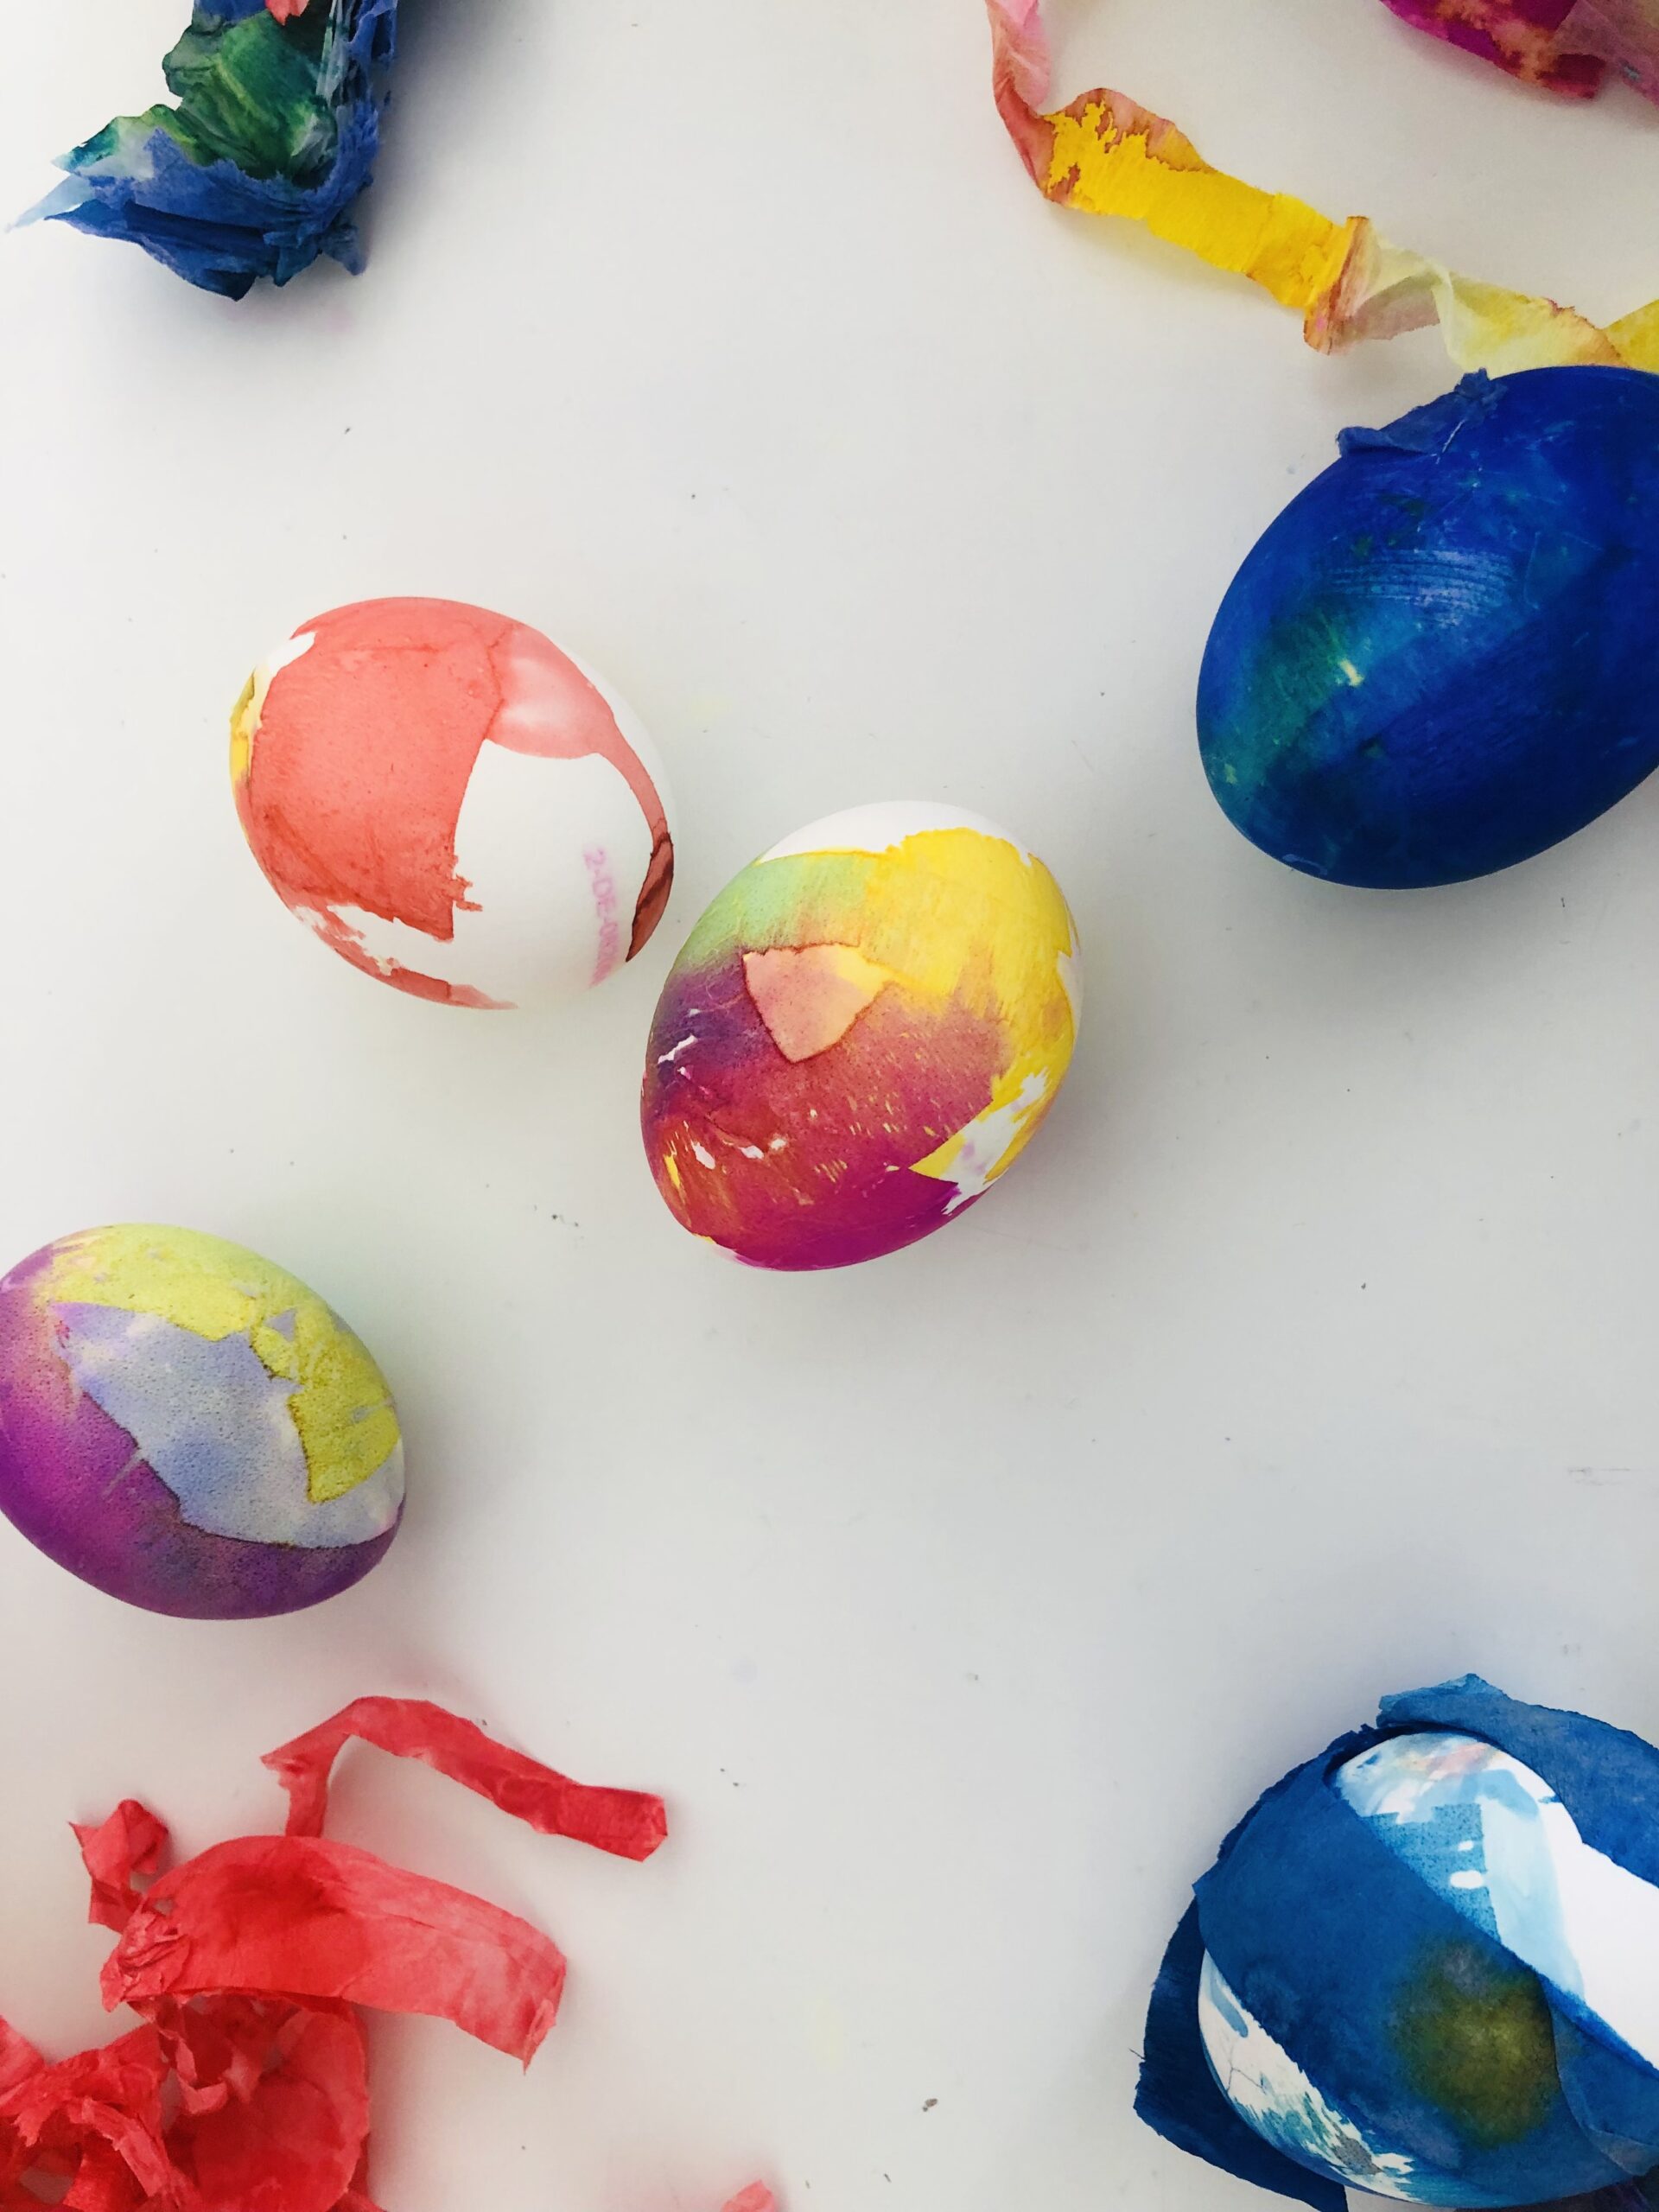 Bild zum Schritt 10 für die Kinder-Beschäftigung: 'Zum Vorschein kommen wunderschön eingefärbte Eier.'